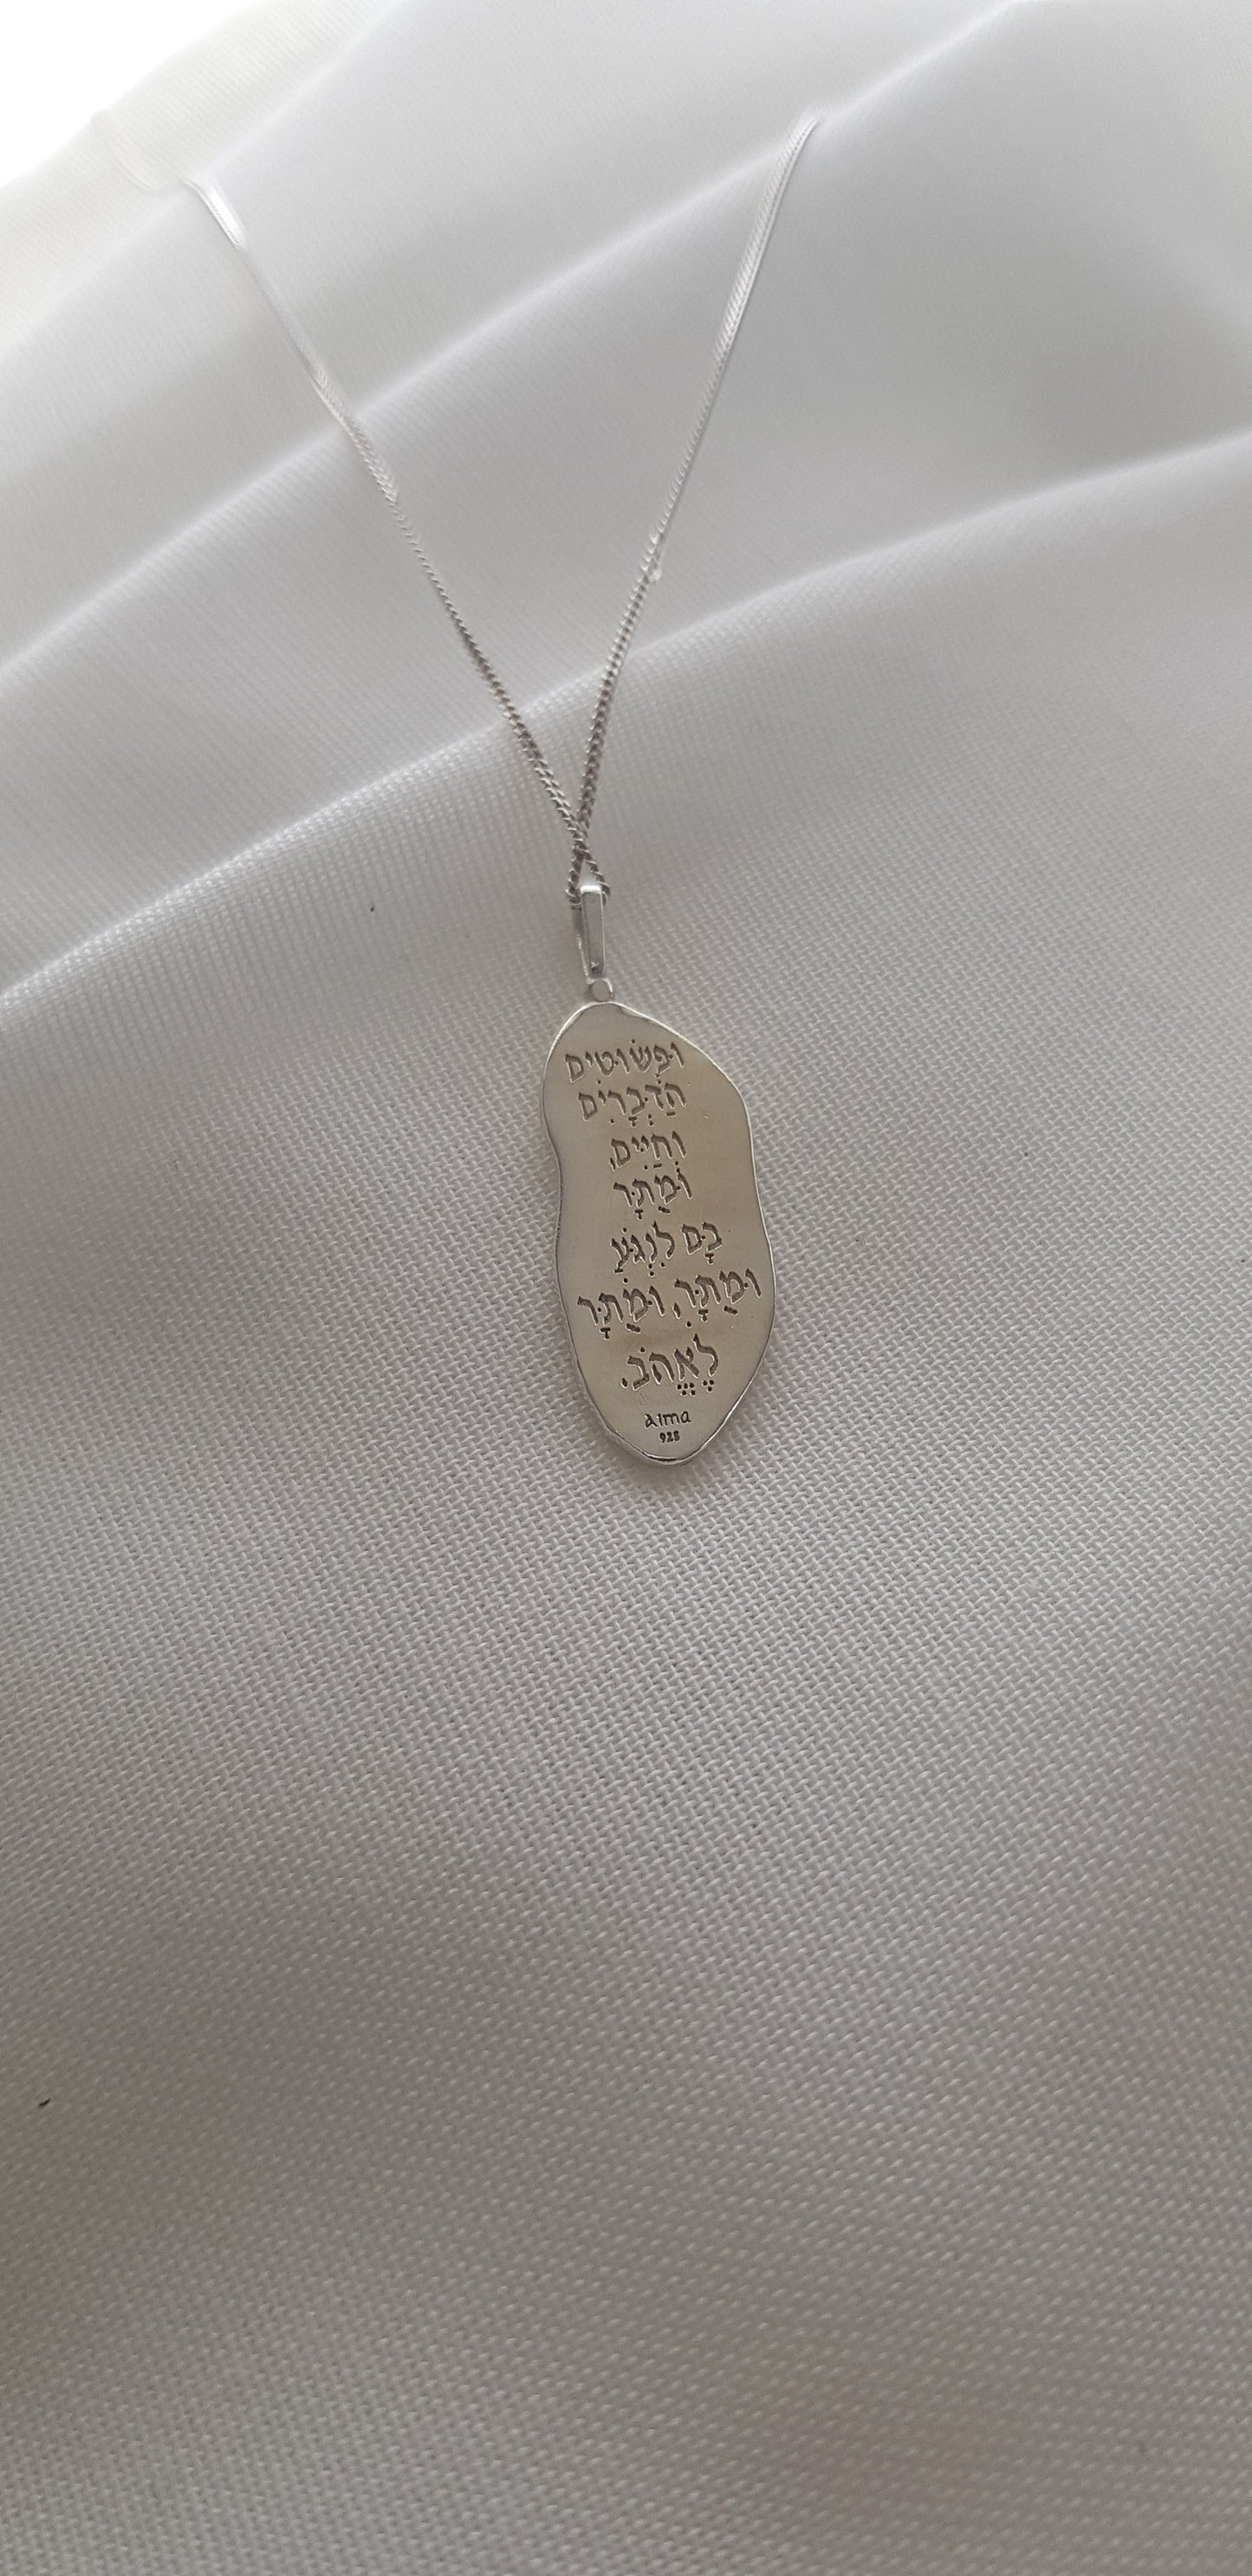 Sterling Silver Hebrew Inscribed Pendant Necklace - AlmaJewelryShop